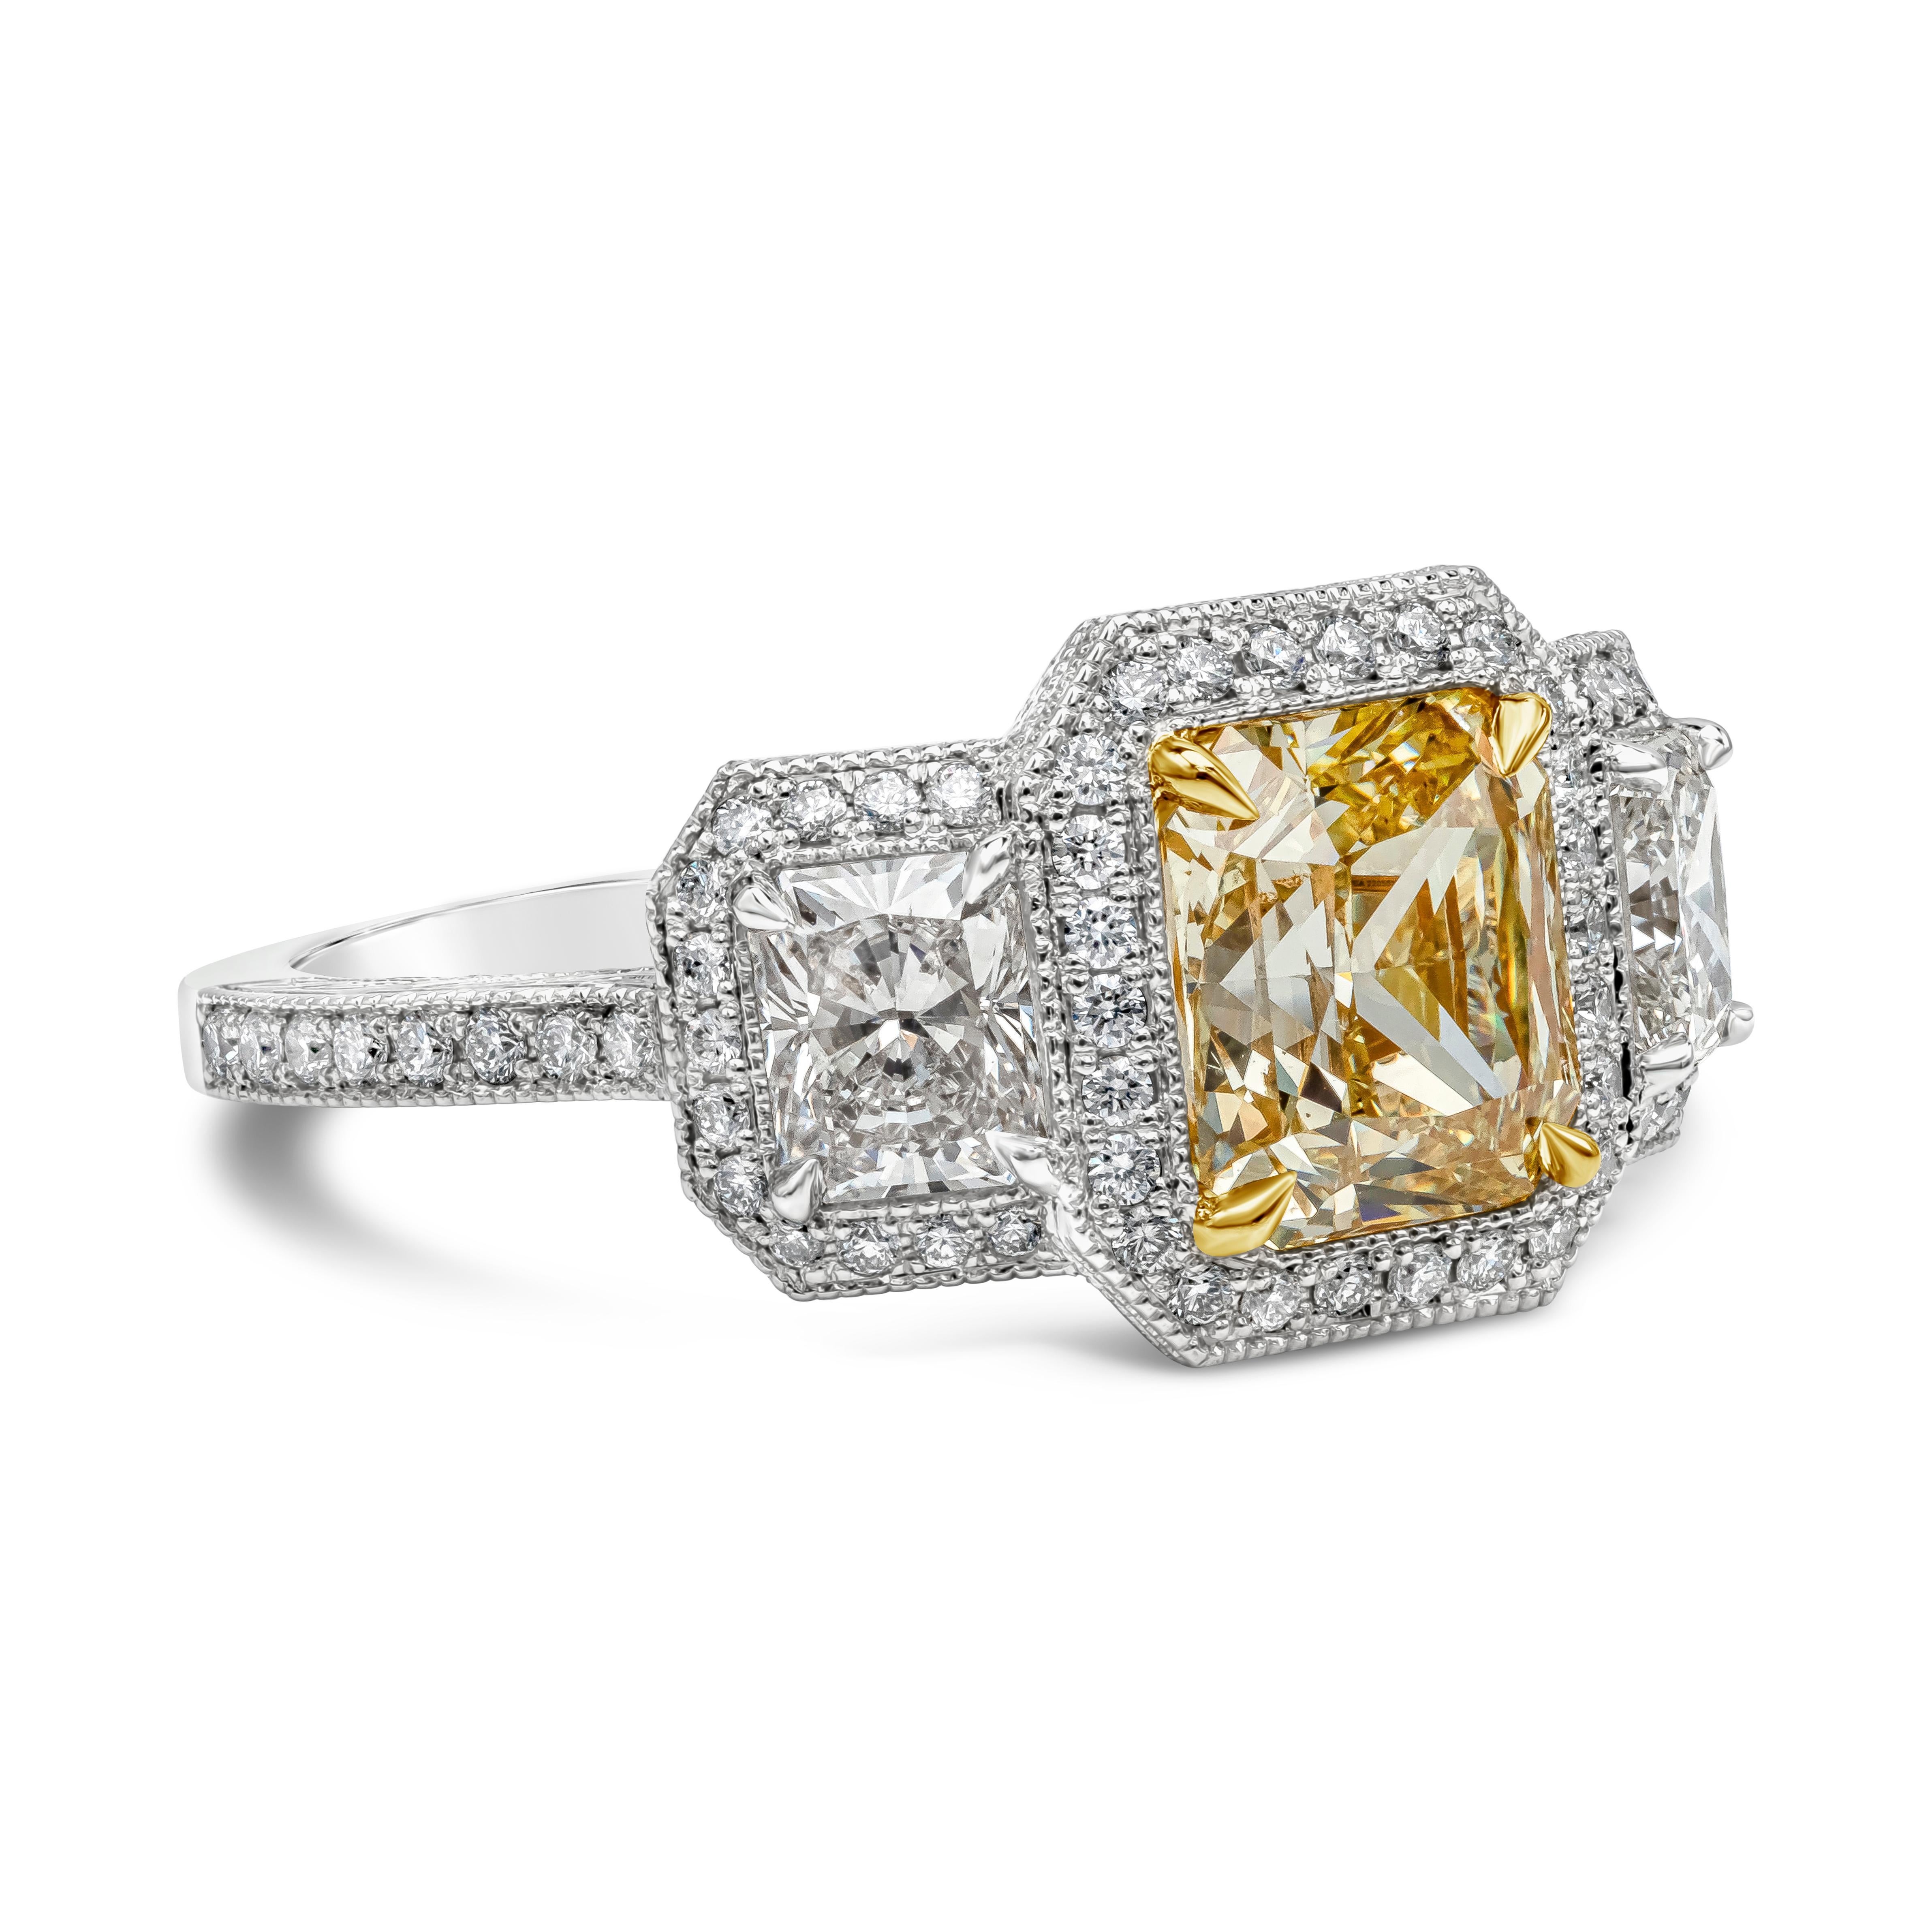 Ein einzigartiger, handgefertigter Verlobungsring mit einem gelben Diamanten von 1,96 Karat im Brillantschliff, der von GIA als Fancy Yellow color, SI1 in clarity zertifiziert wurde und in einer vierzackigen Korbfassung aus 18 Karat Gelbgold gefasst